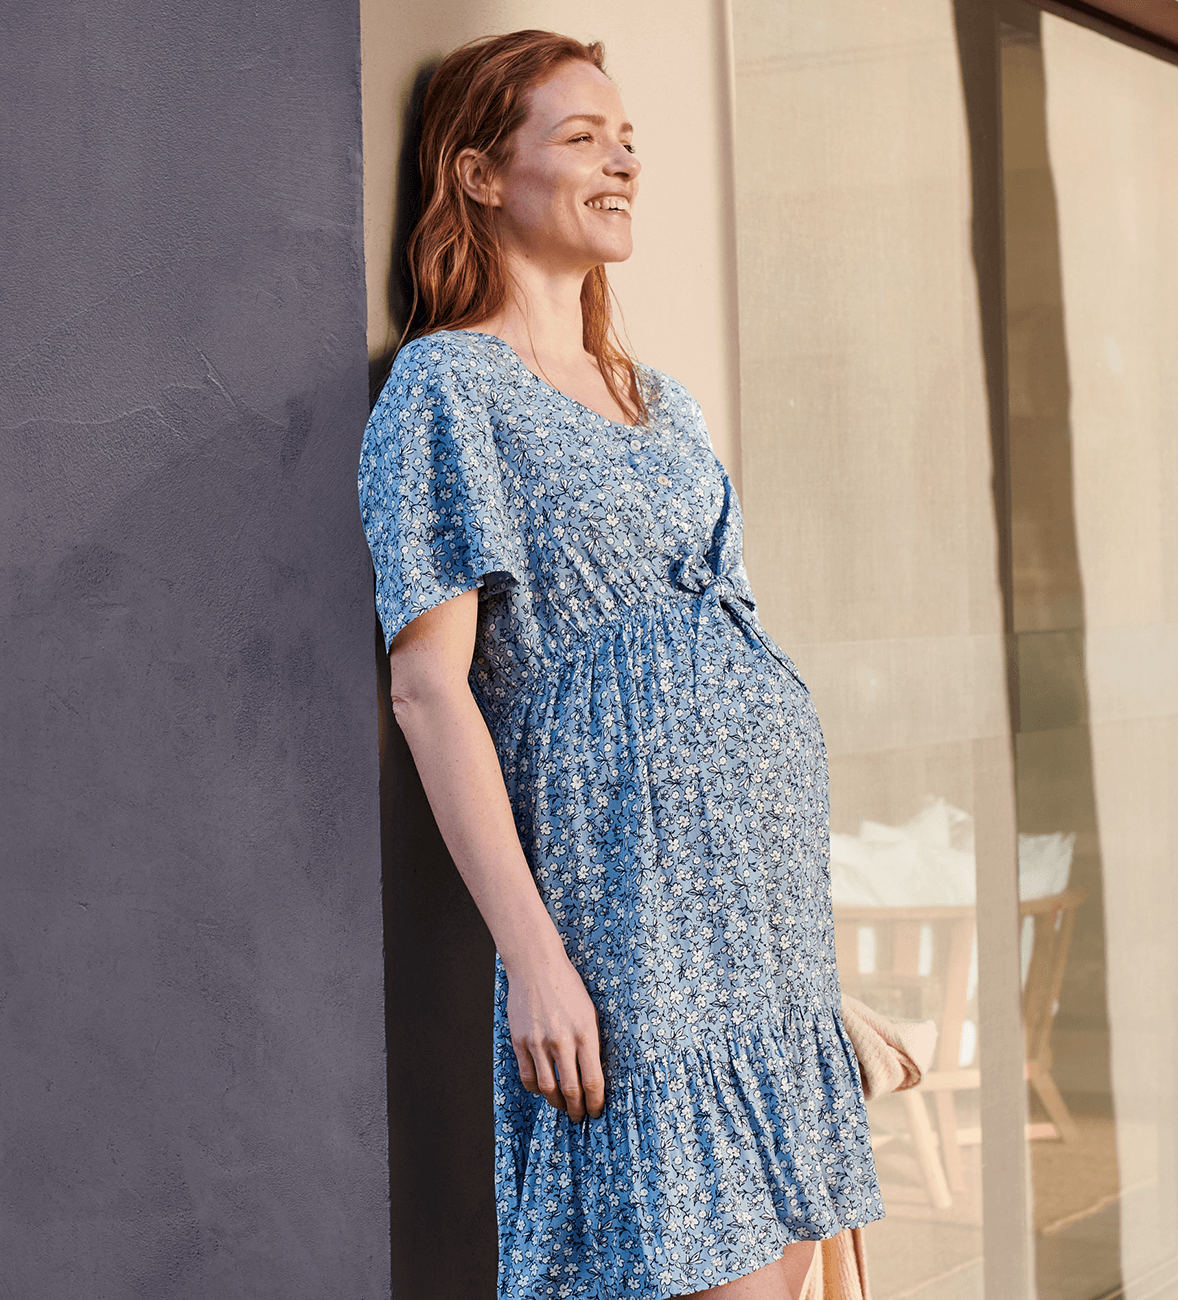 Těhotná žena si užívá slunce v květovaných těhotenských šatech s nabíráním nad břichem.